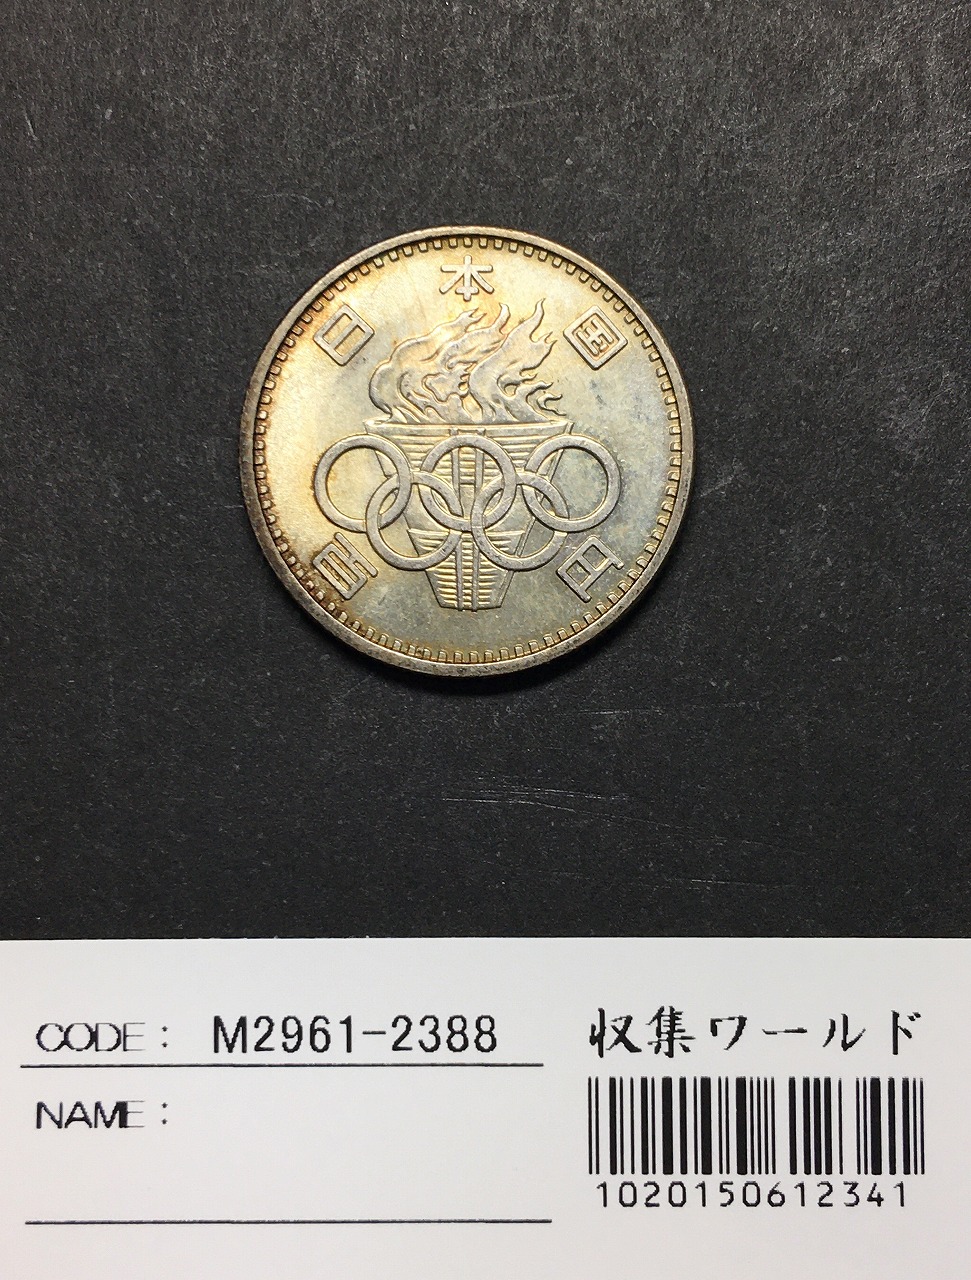 1964年 東京オリンピック記念 100円銀貨 (ト-ン) 未使用-2388